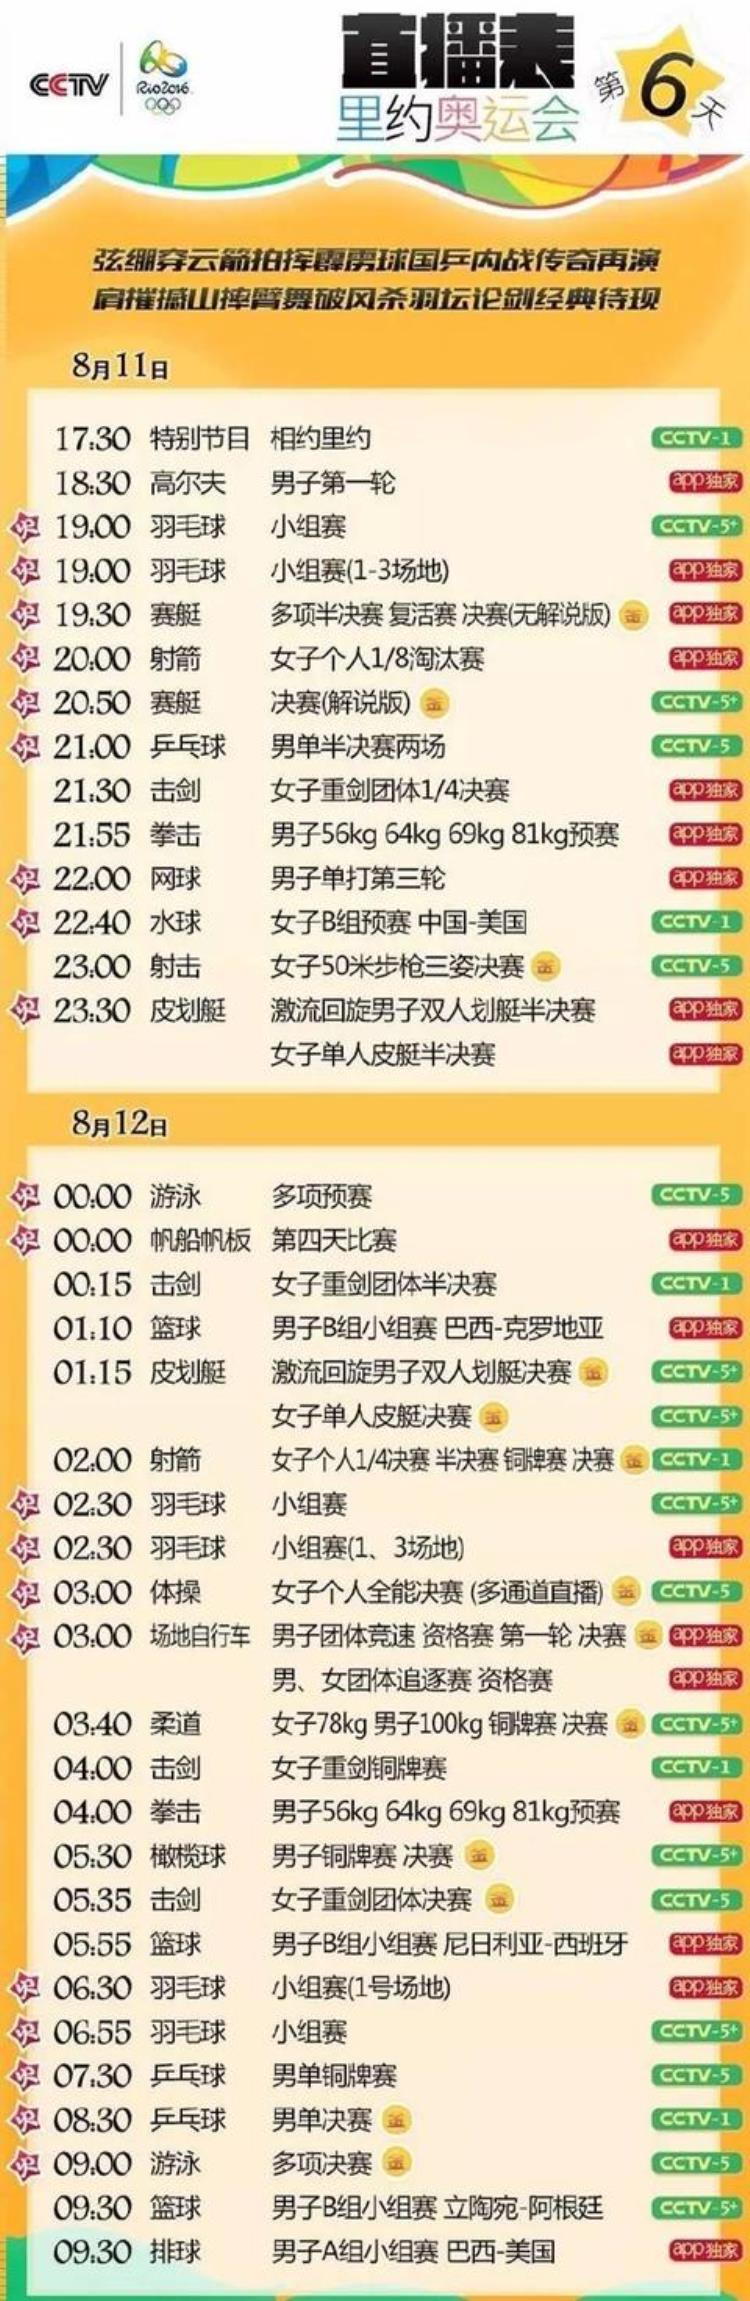 里约乒乓球男团决赛回放「聚焦里约丨CCTV1明天8:30直播乒乓球男单决赛」